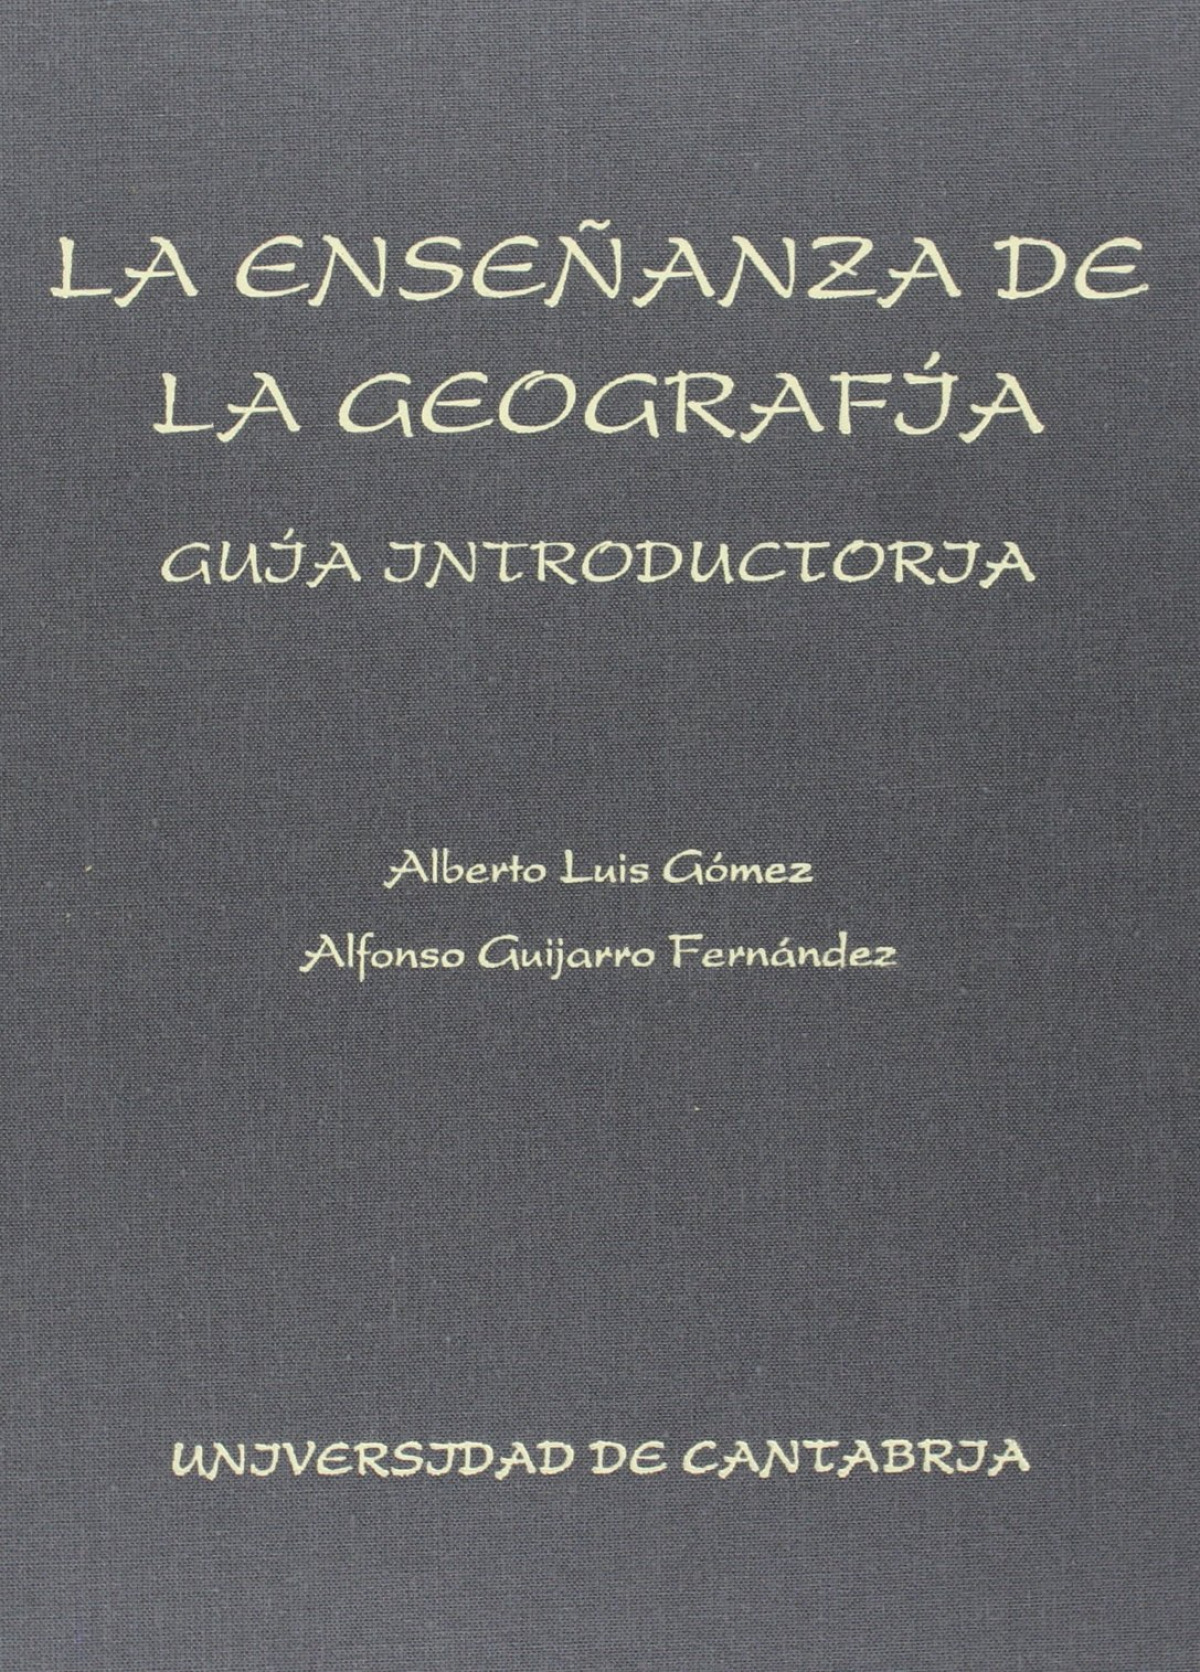 La enseñanza de la geografía: guía didáctica - Luis Gómez, Alberto/ Guijarro, Alfonso